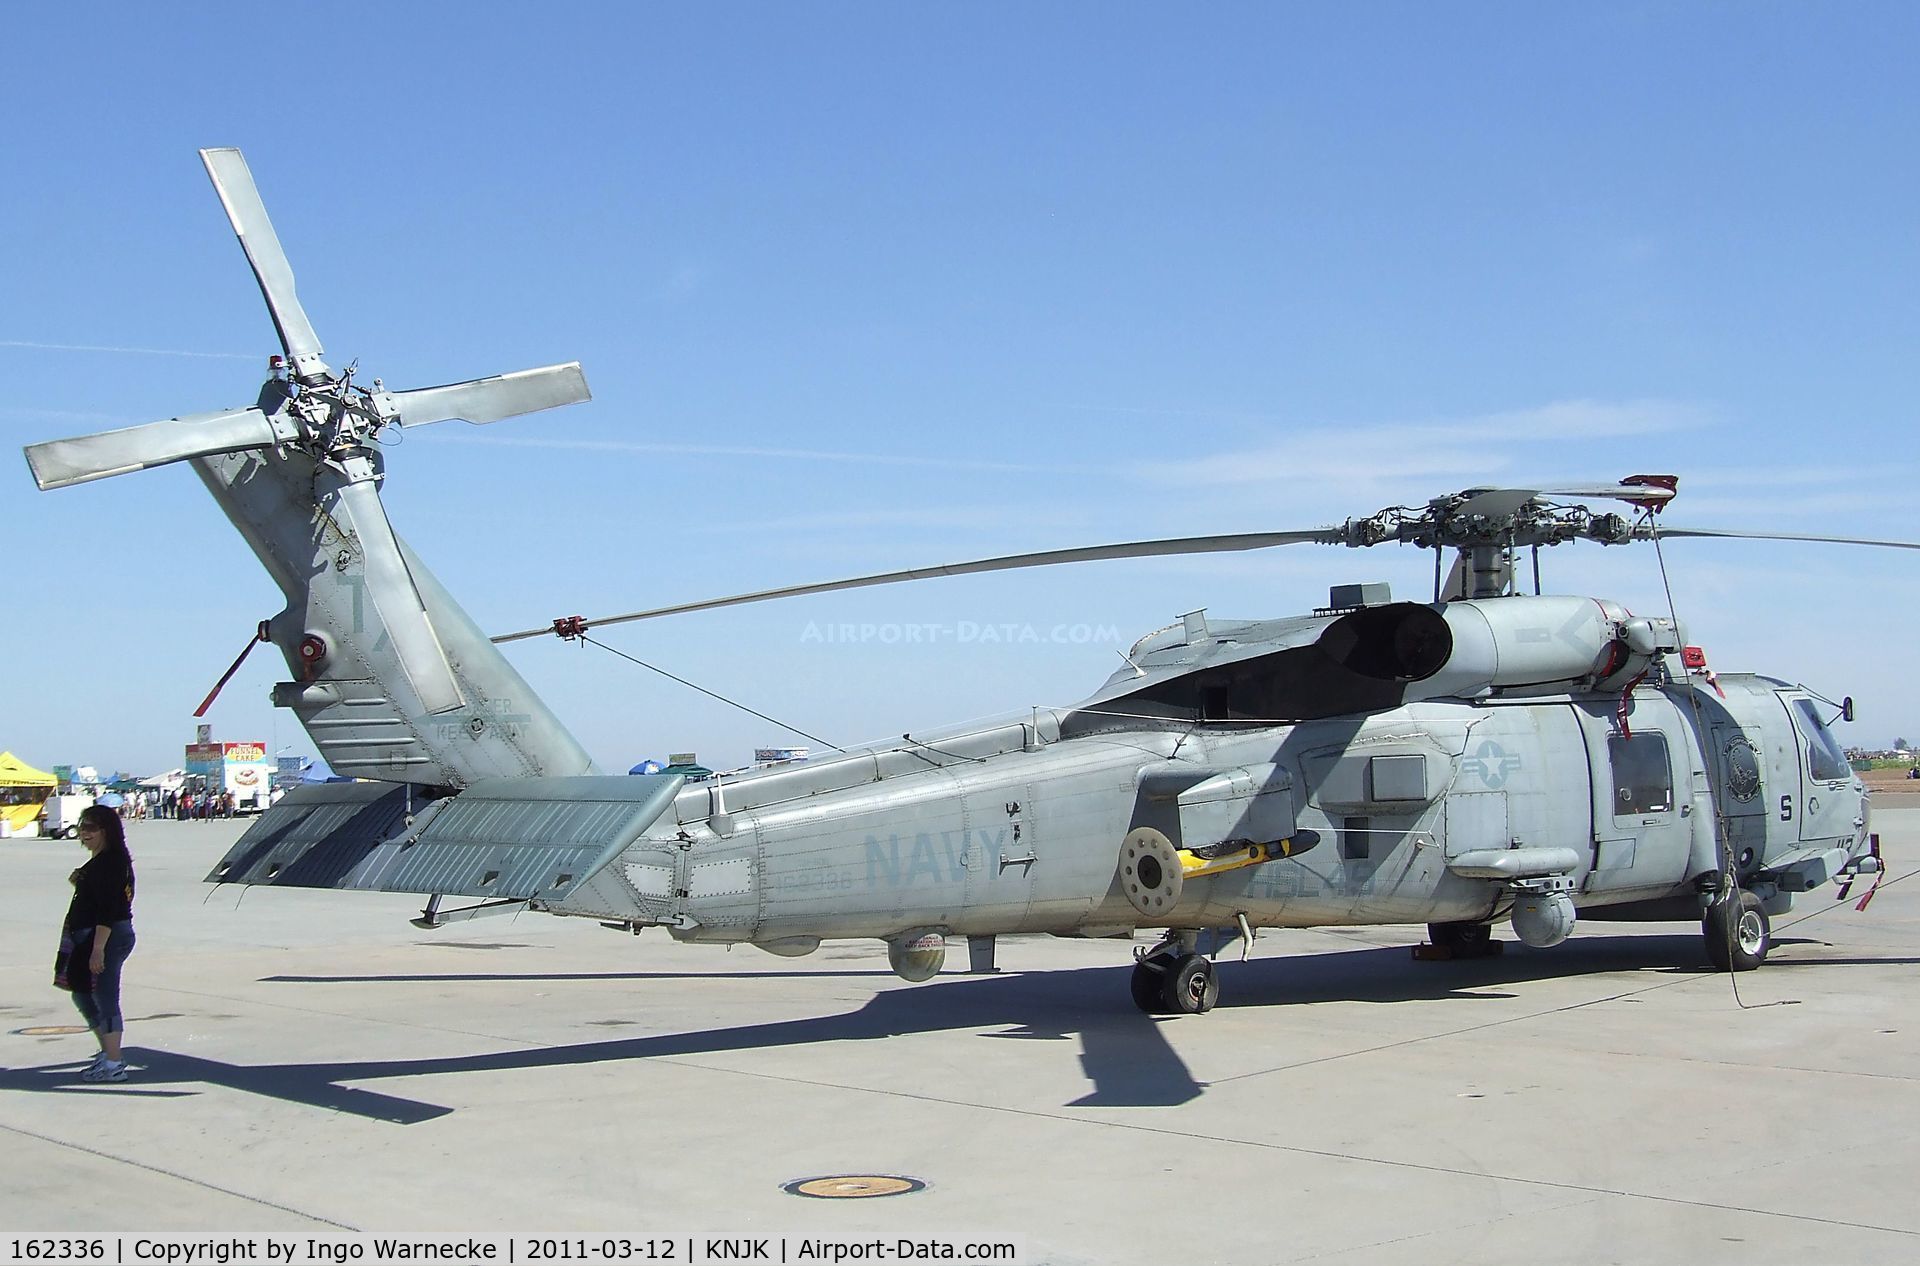 162336, Sikorsky SH-60B Seahawk C/N 70-0442, Sikorsky SH-60B Seahawk of the US Navy at the 2011 airshow at El Centro NAS, CA